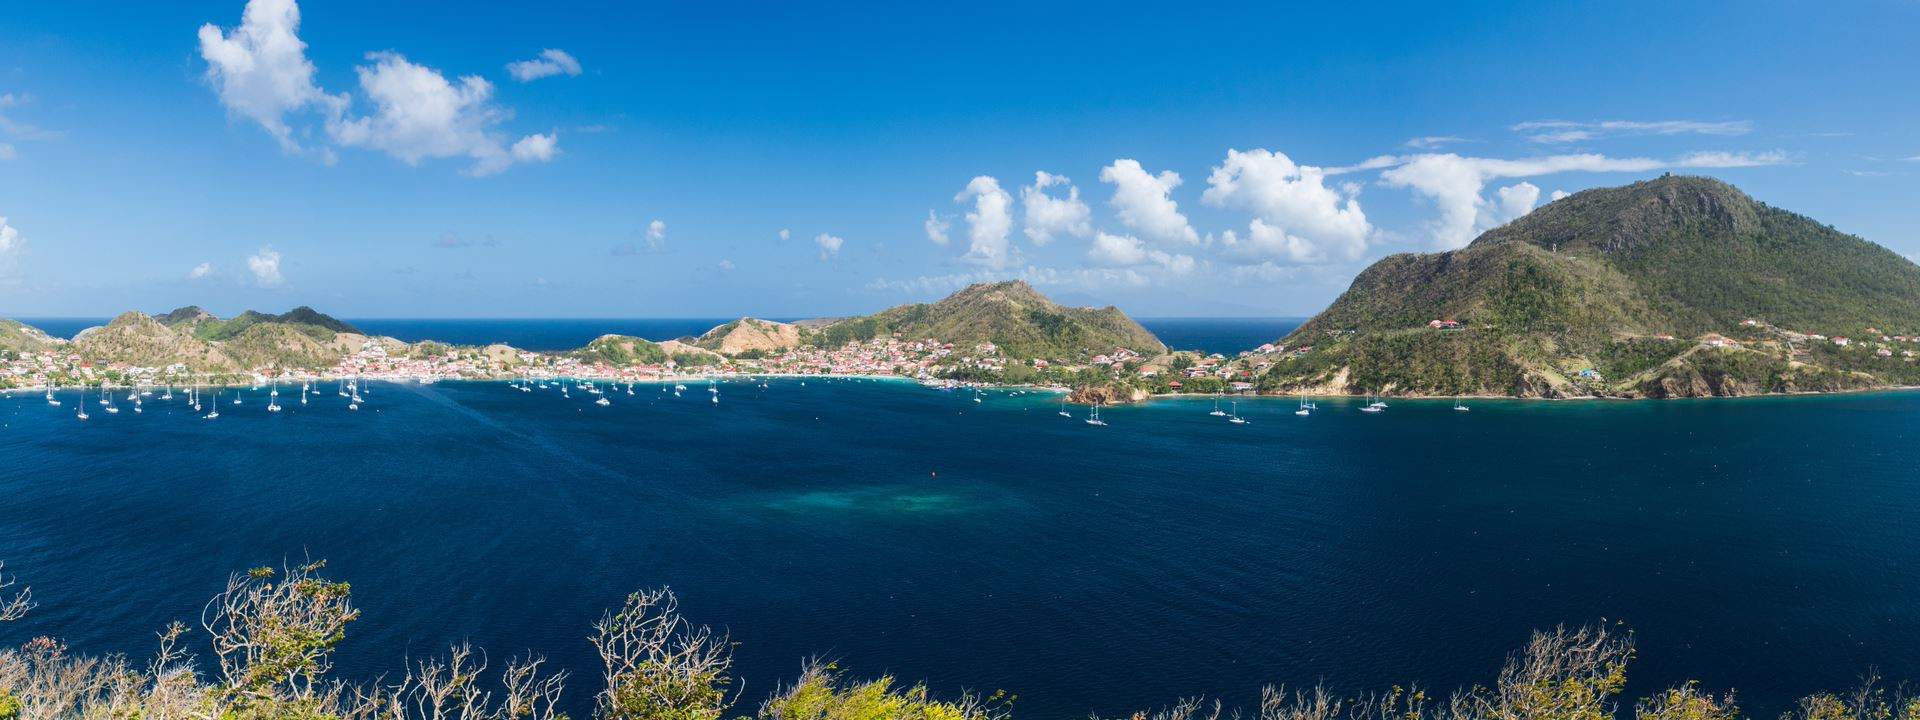 Les Antilles, l'endroit rêvé pour apprendre à naviguer